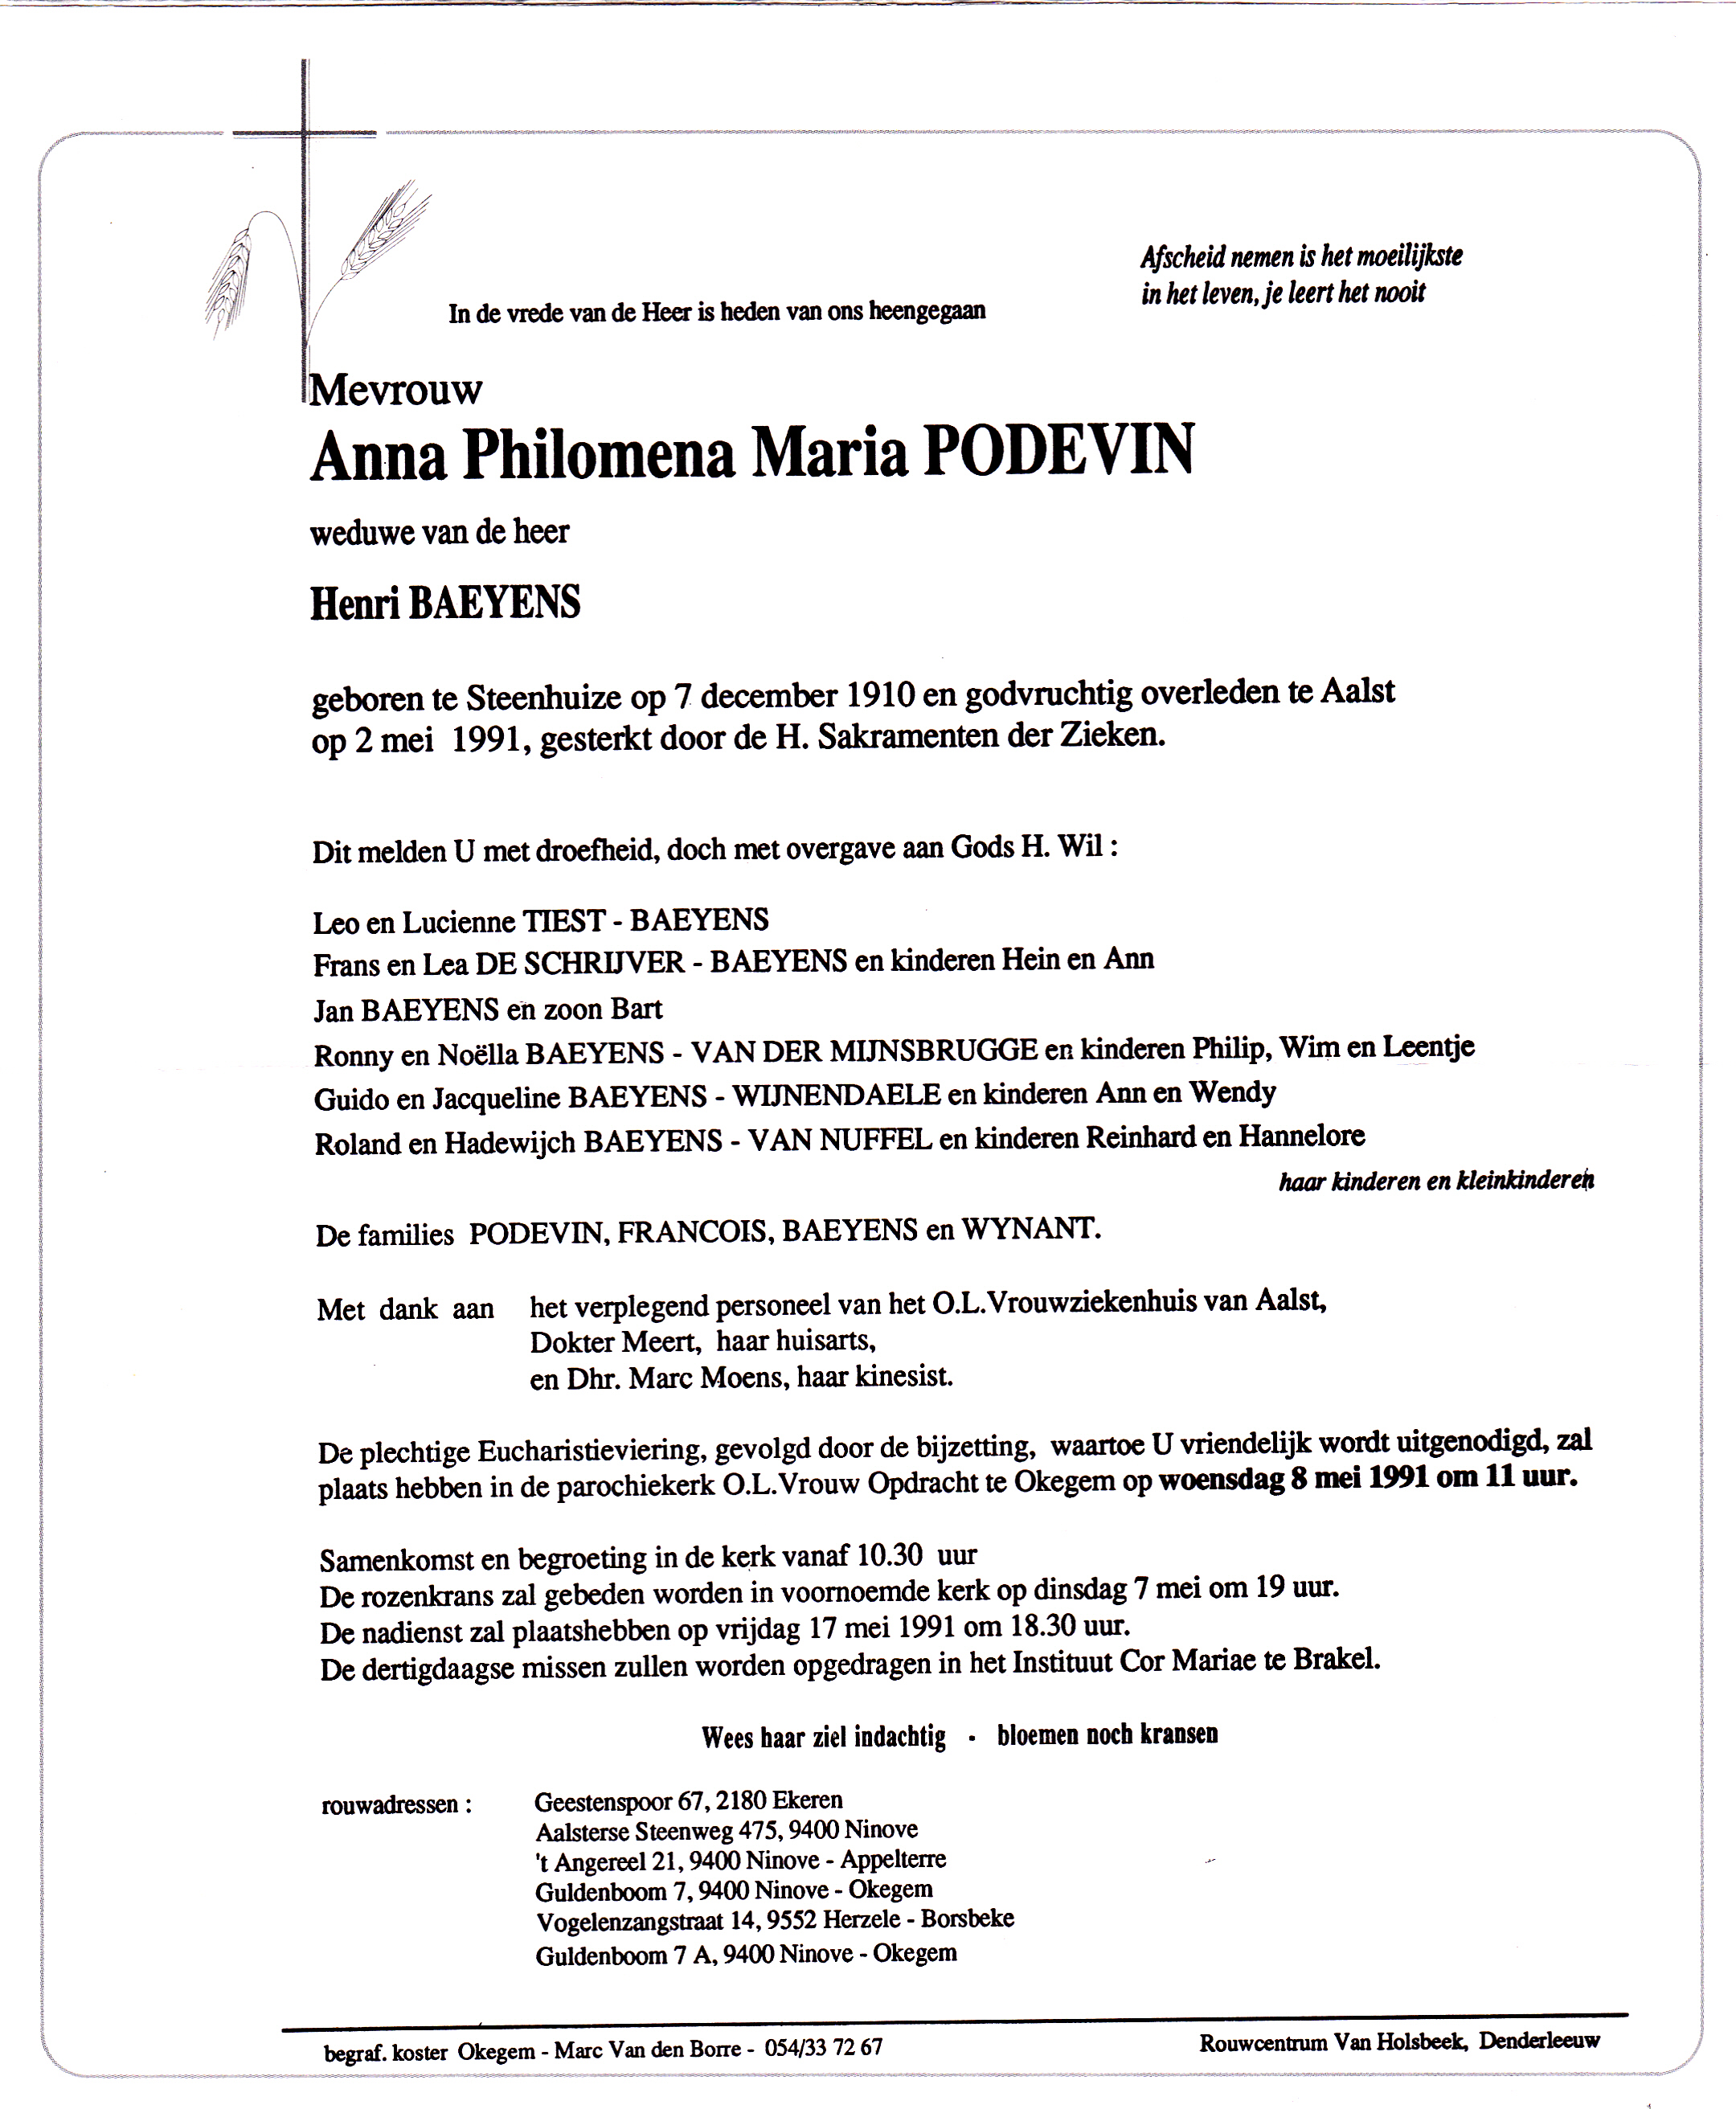 Podevin Anna Philomena Maria 